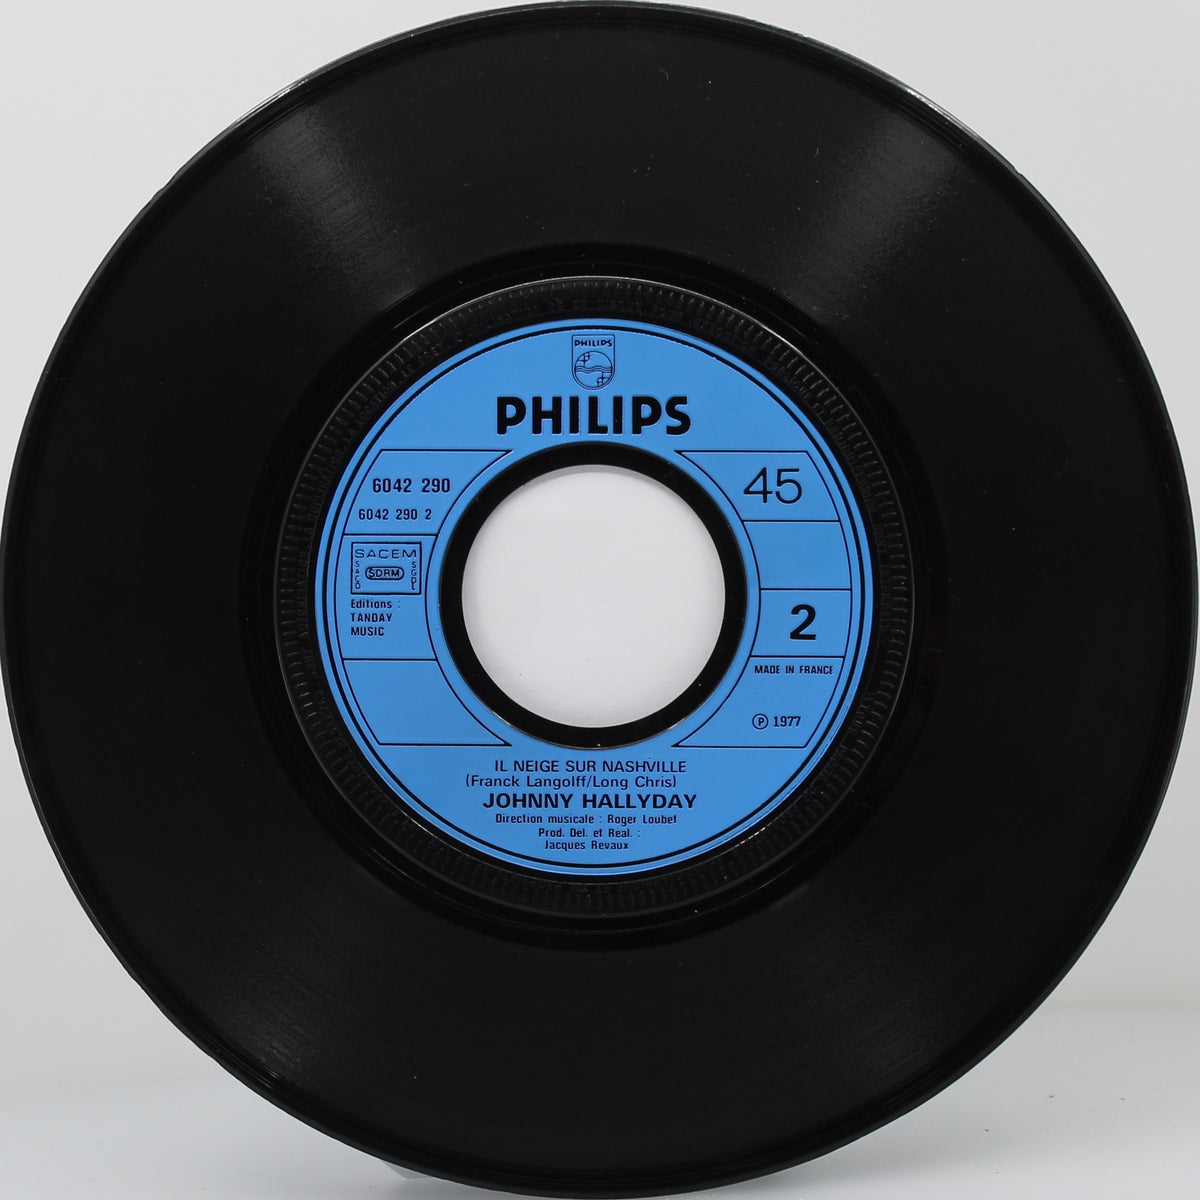 Johnny Hallyday – Le Cœur En Deux / Il Neige Sur Nashville, Vinyl, 7&quot;, 45 RPM, Single, France 1977